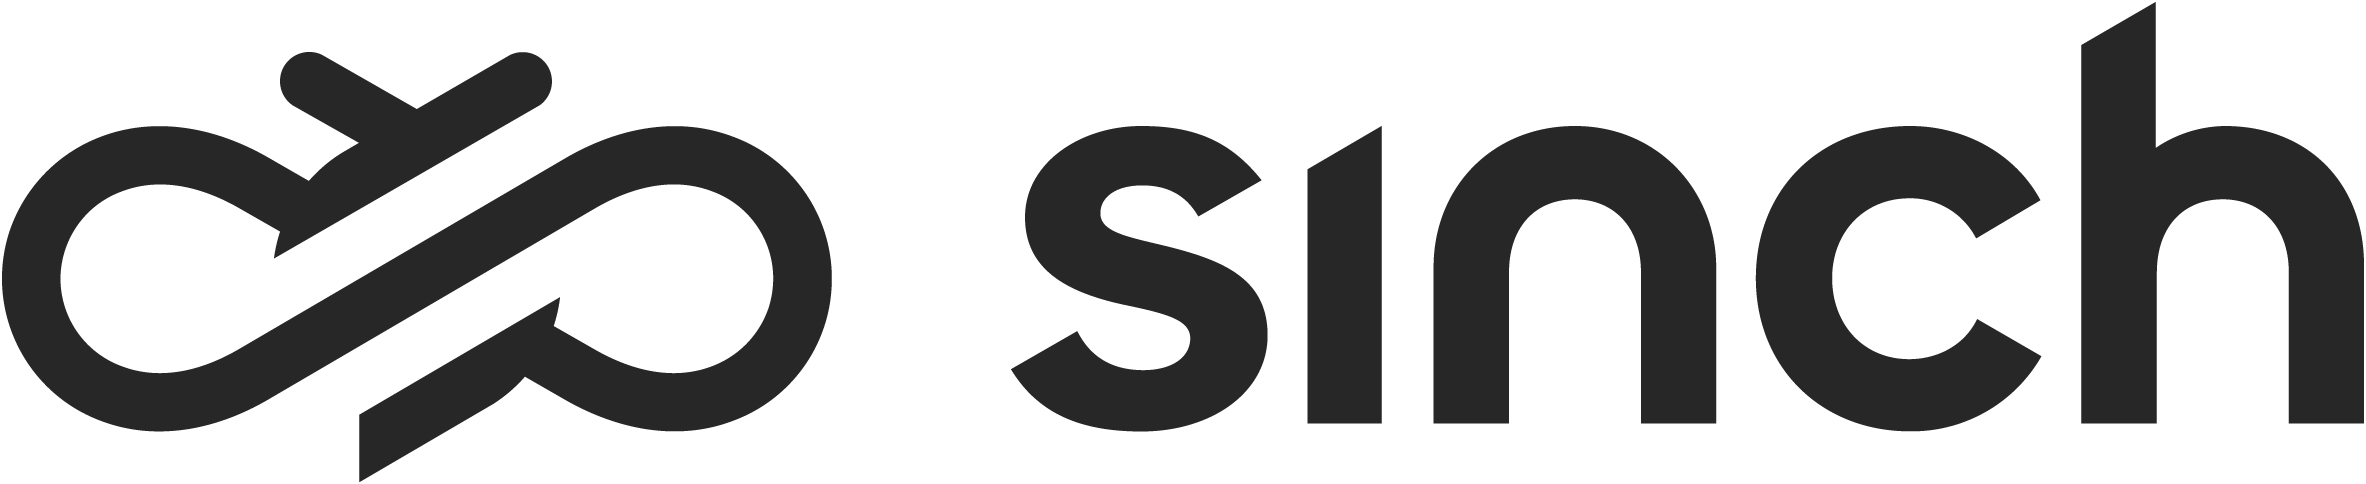 Sinch logo.